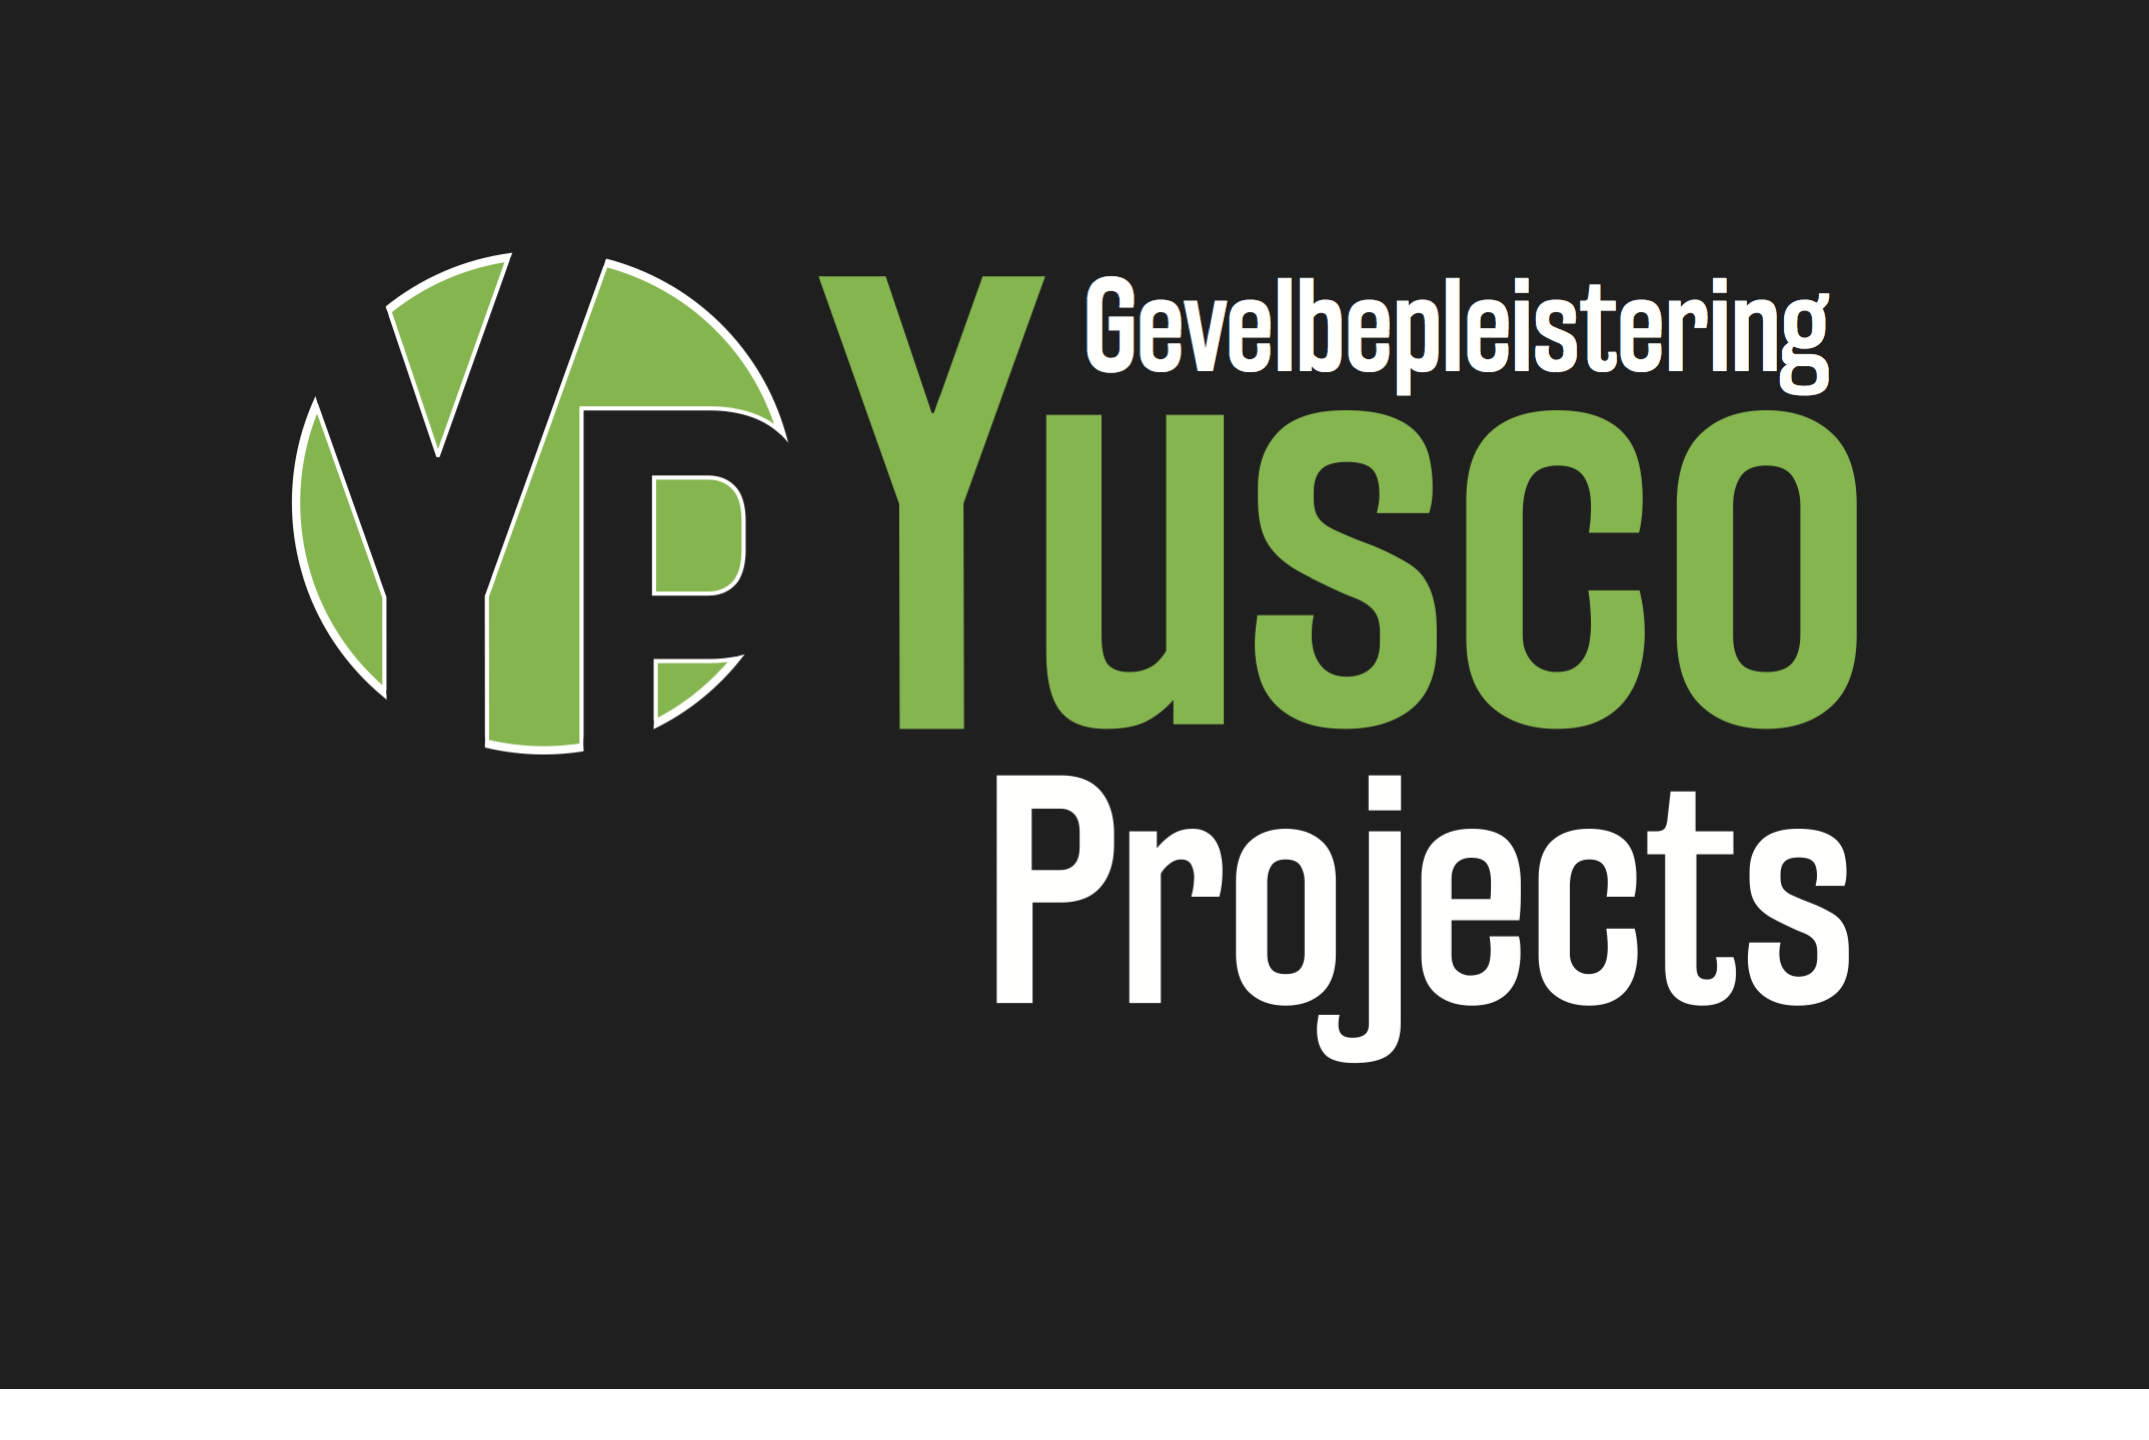 bouwaannemers Tollembeek Yusco Projects Gevelbepleistering